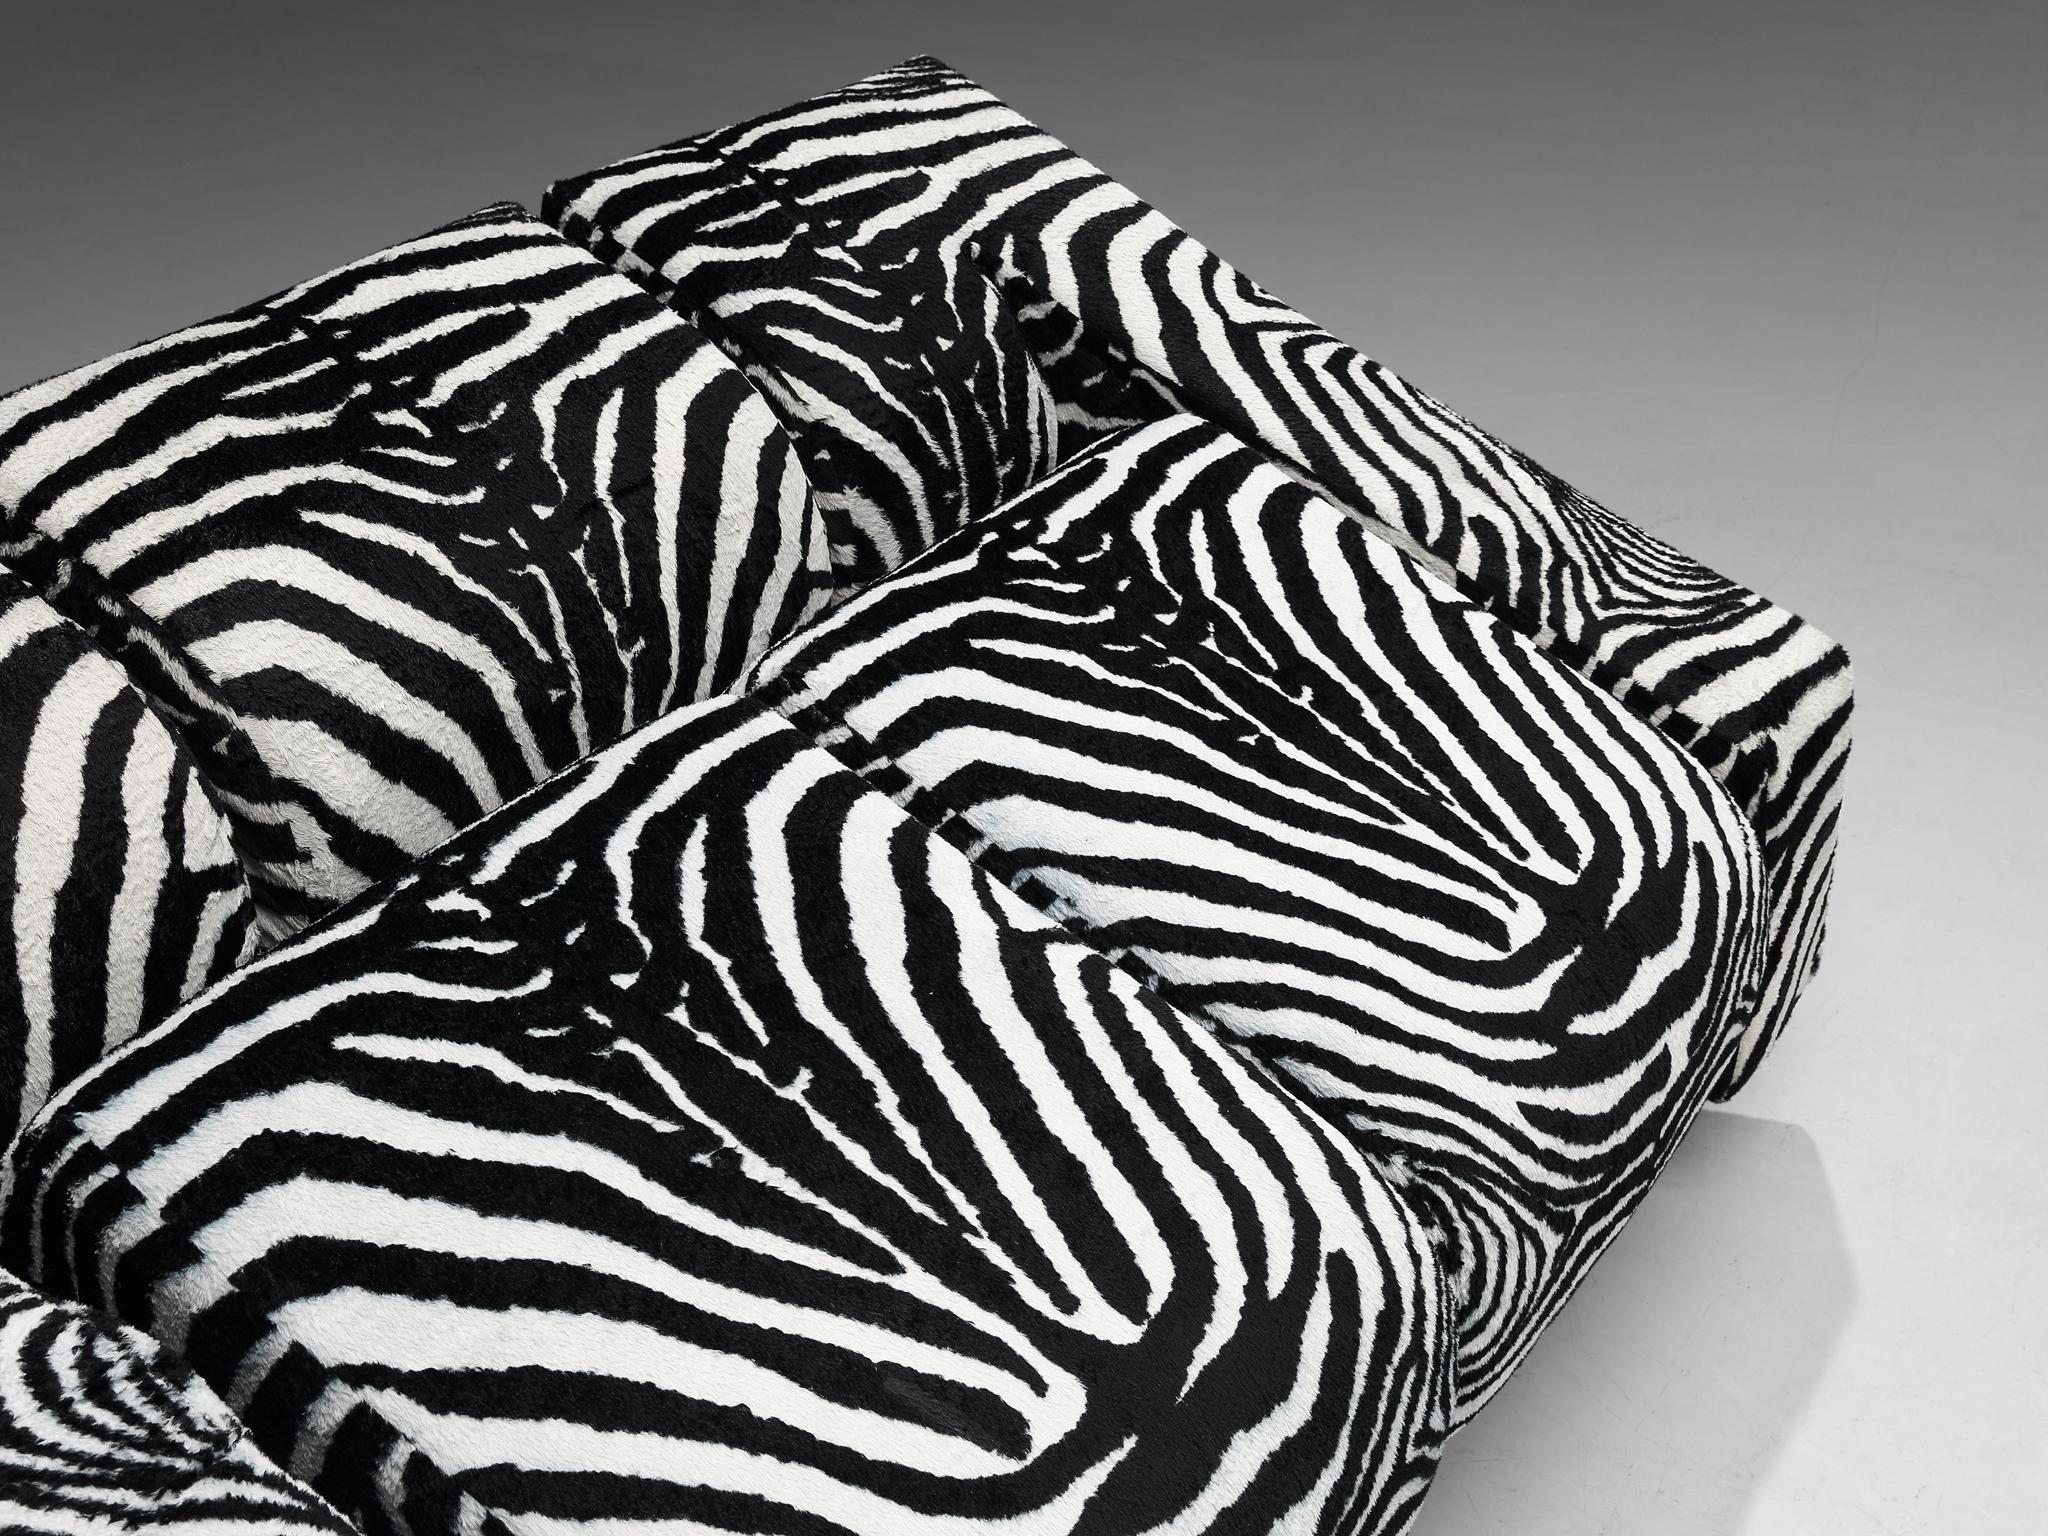 Mario Botta for Alias Pair of 'Obliqua' Sofas in Zebra Print Upholstery  For Sale 5